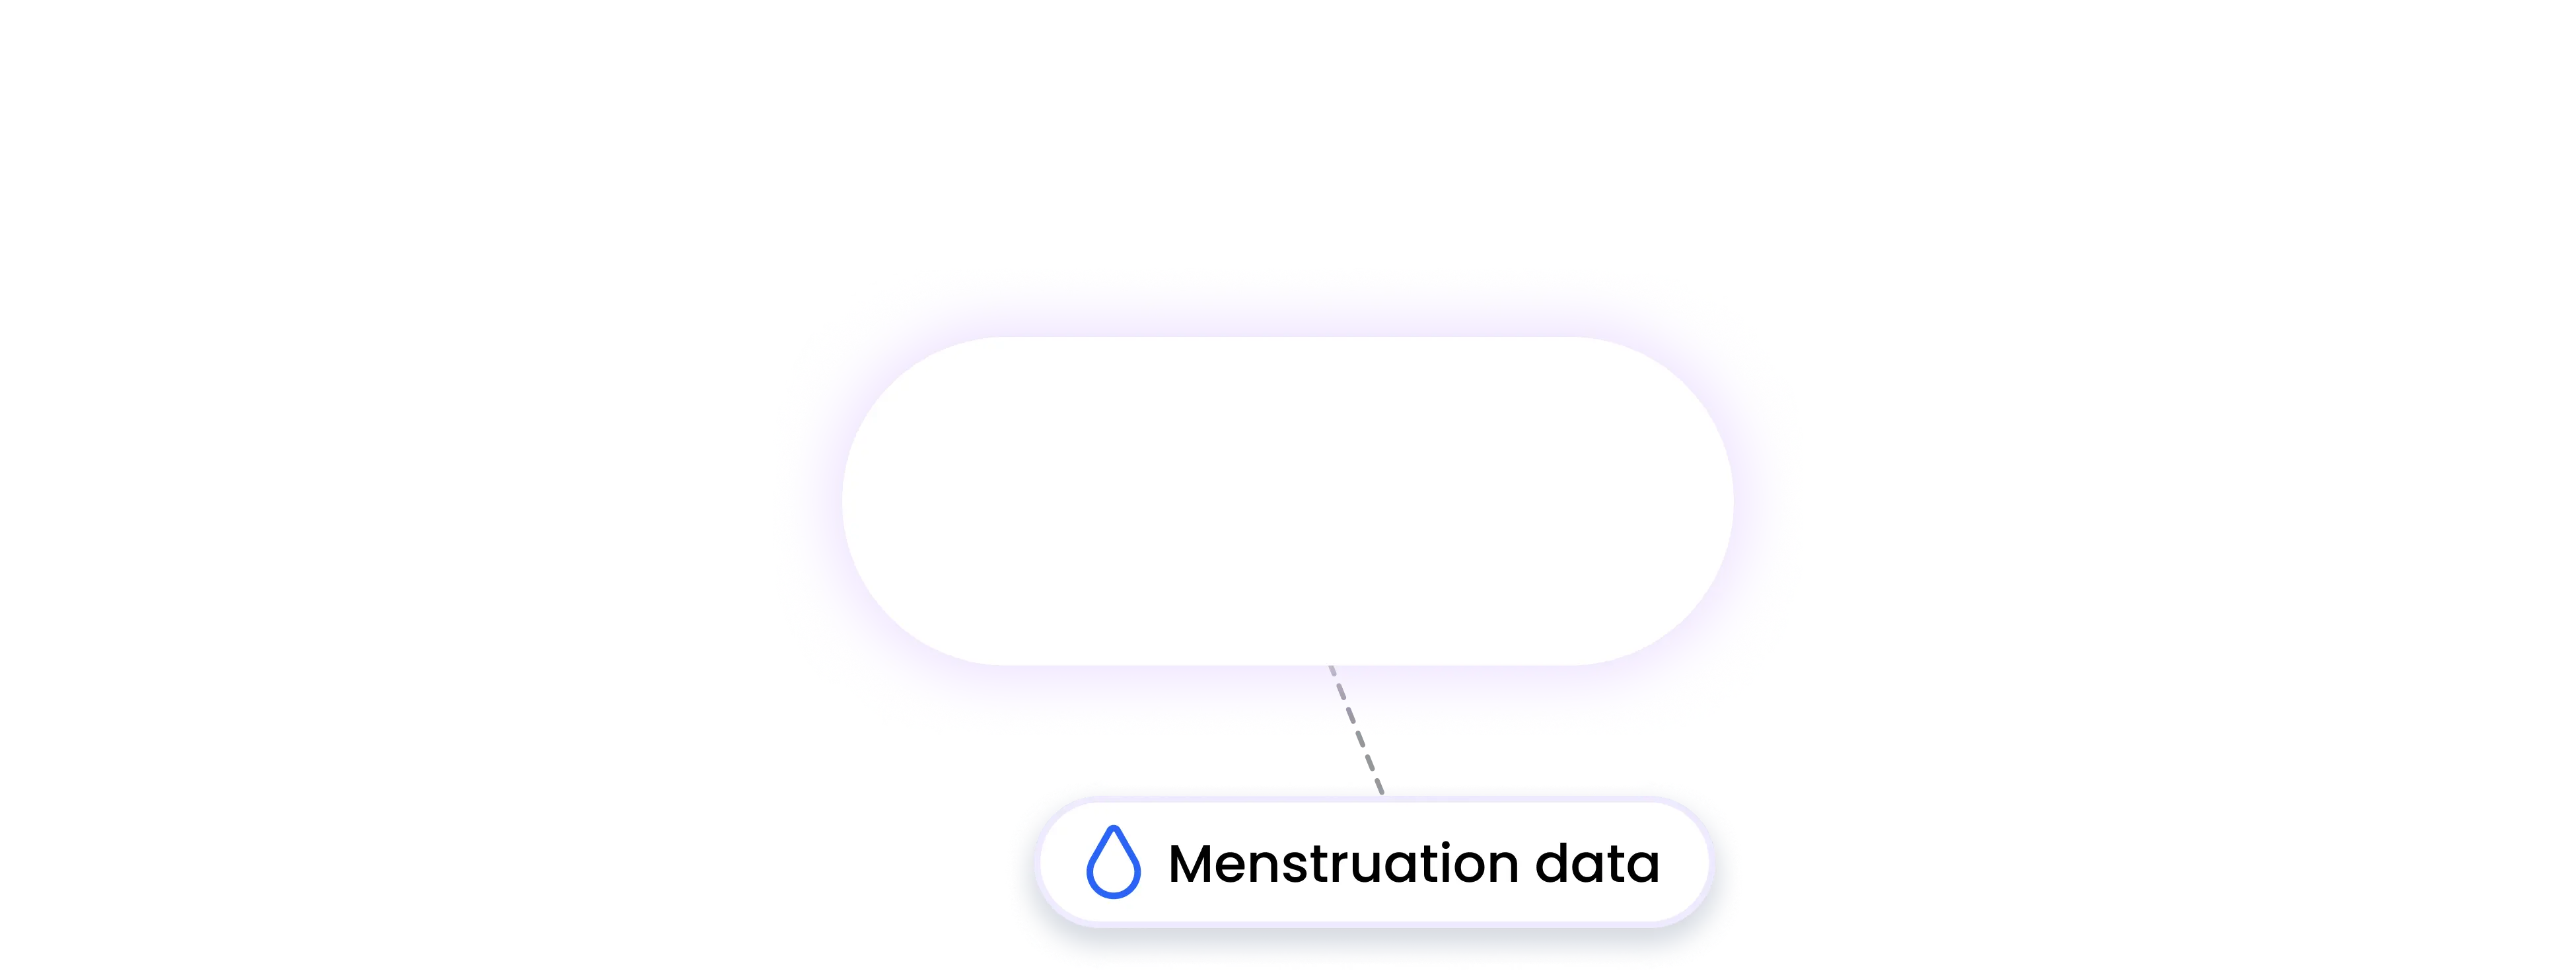 wahoo integration MENSTRUATION data